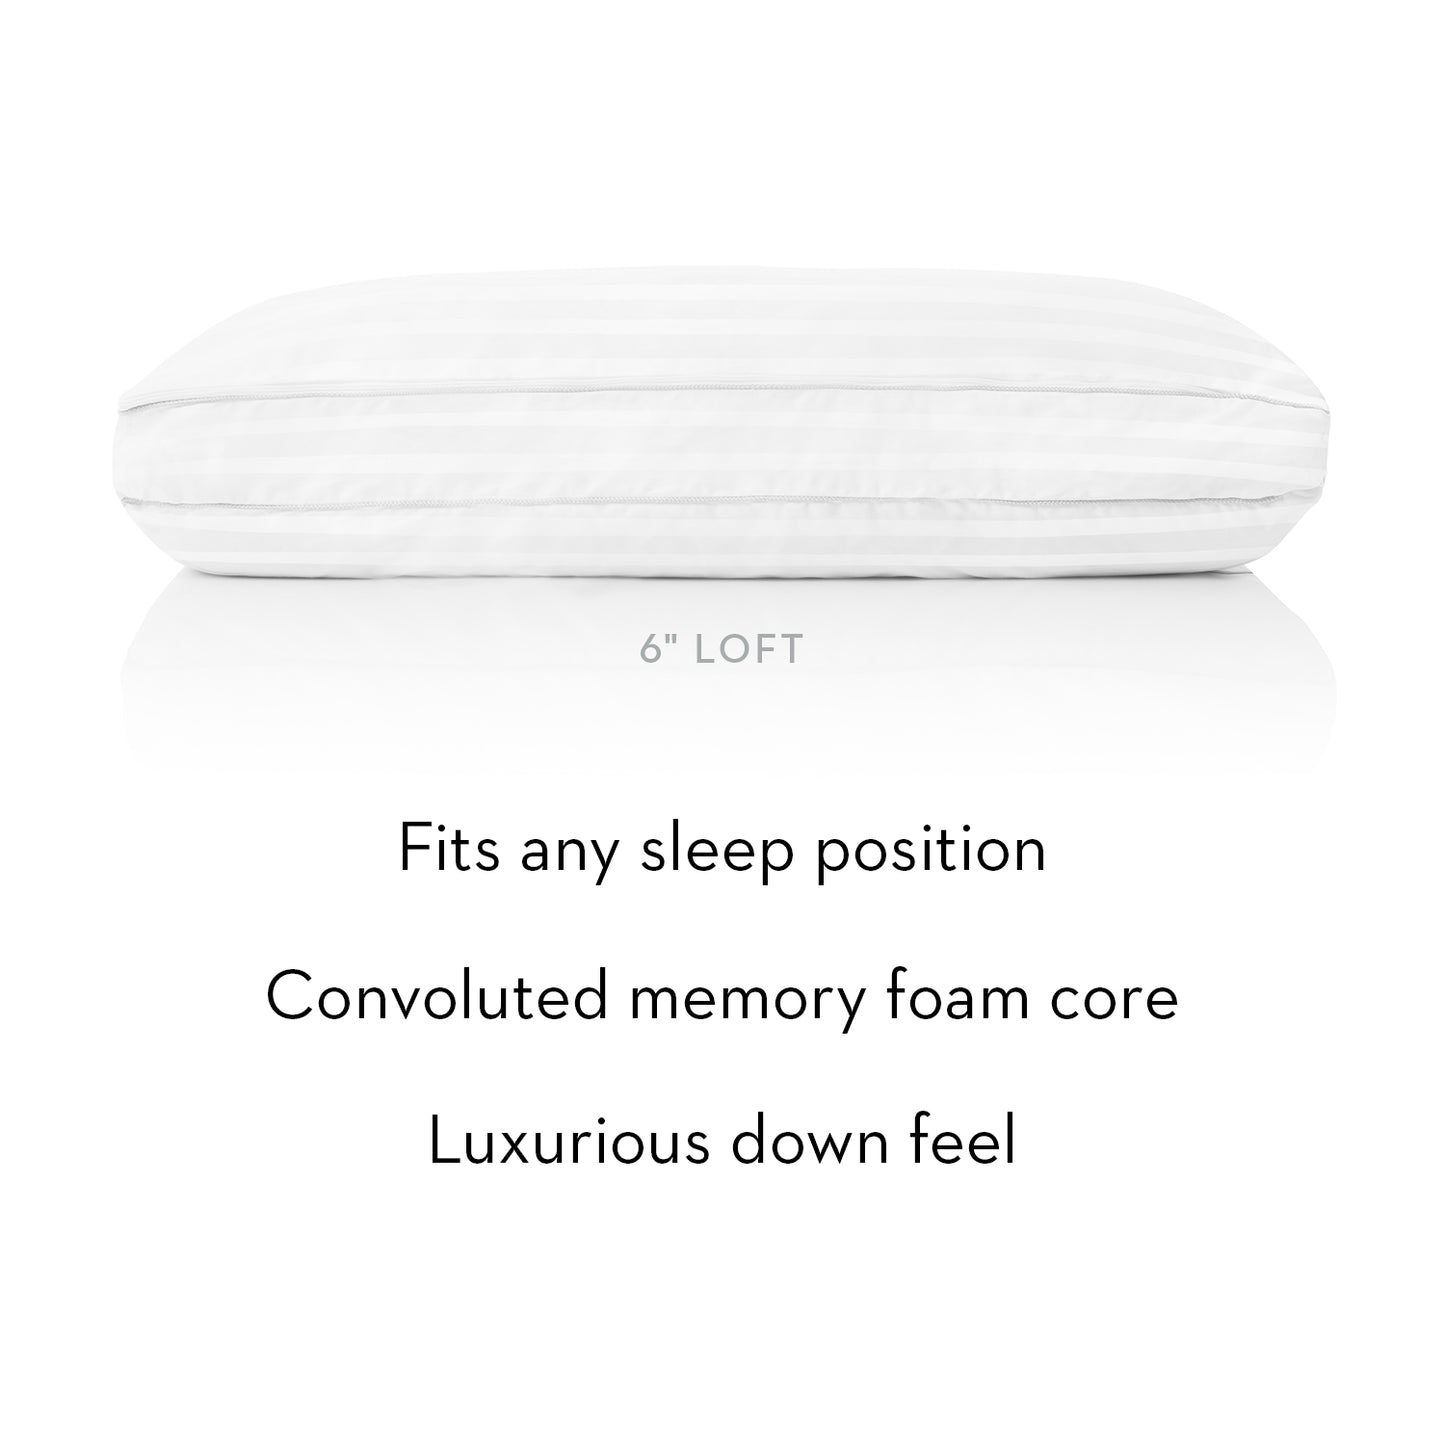 The Convolution Pillow